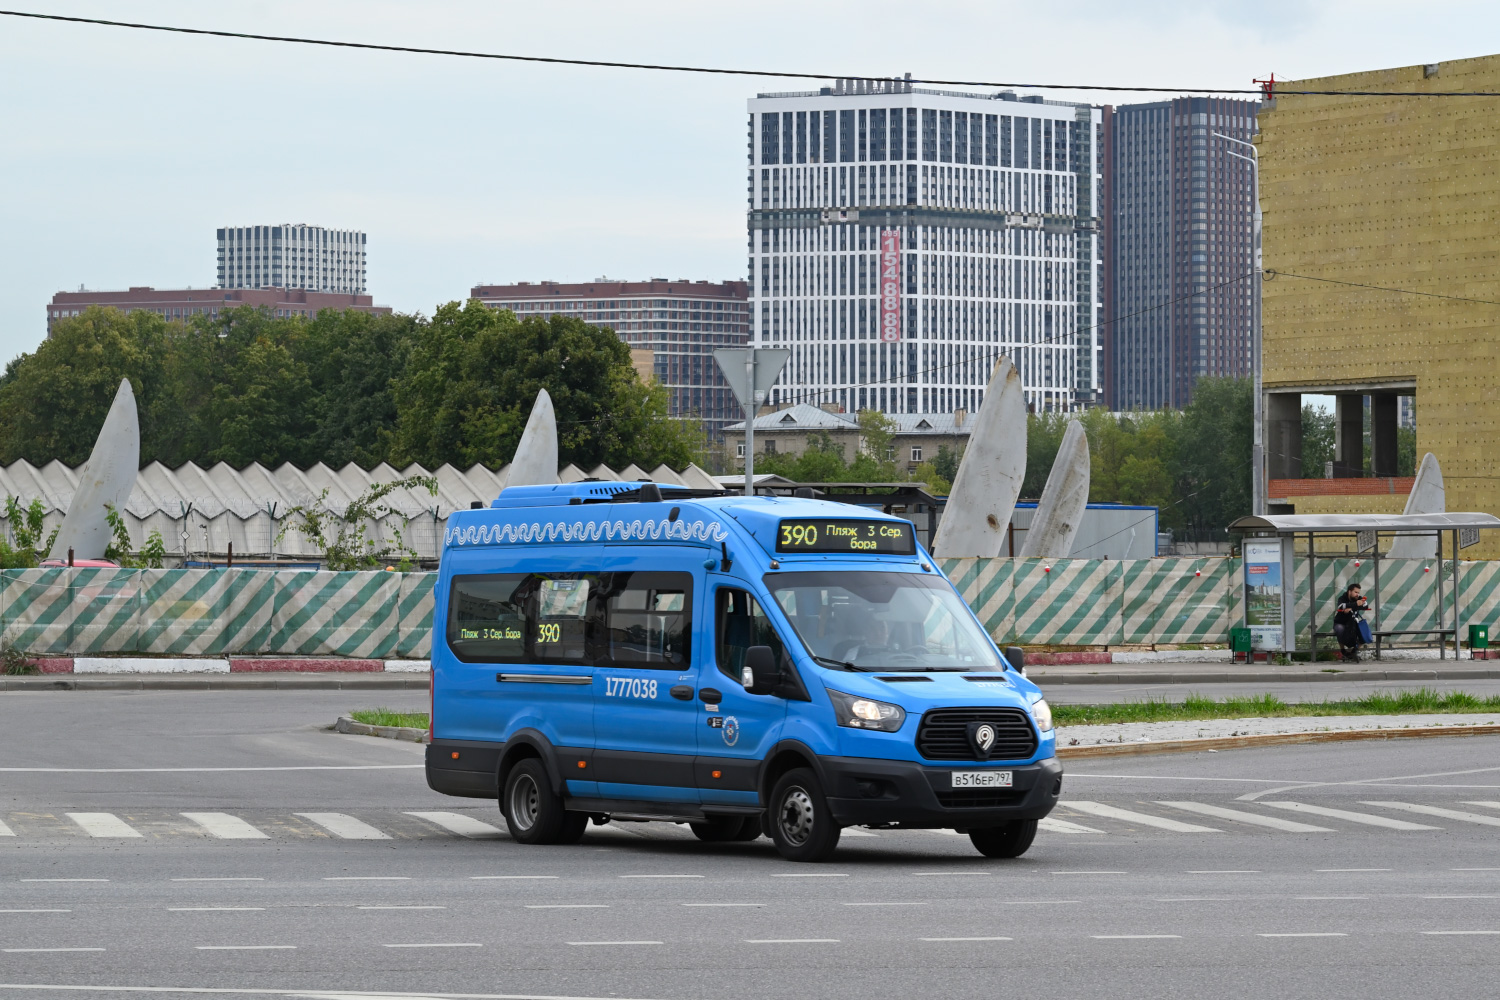 Moszkva, Nizhegorodets-222708 (Ford Transit FBD) sz.: 1777038